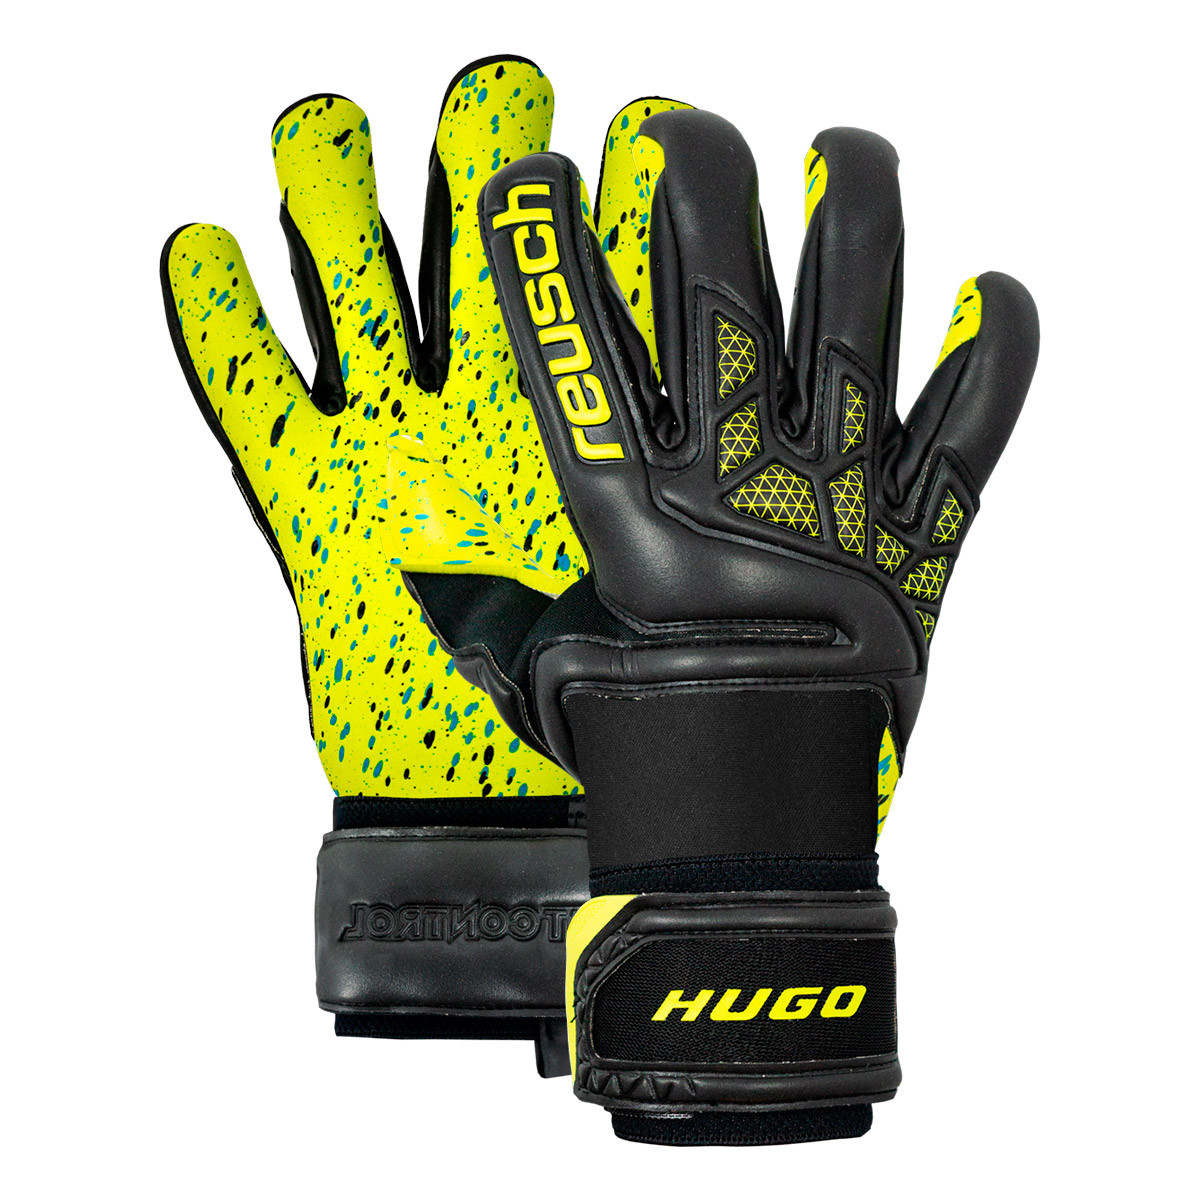 lloris goalkeeper gloves